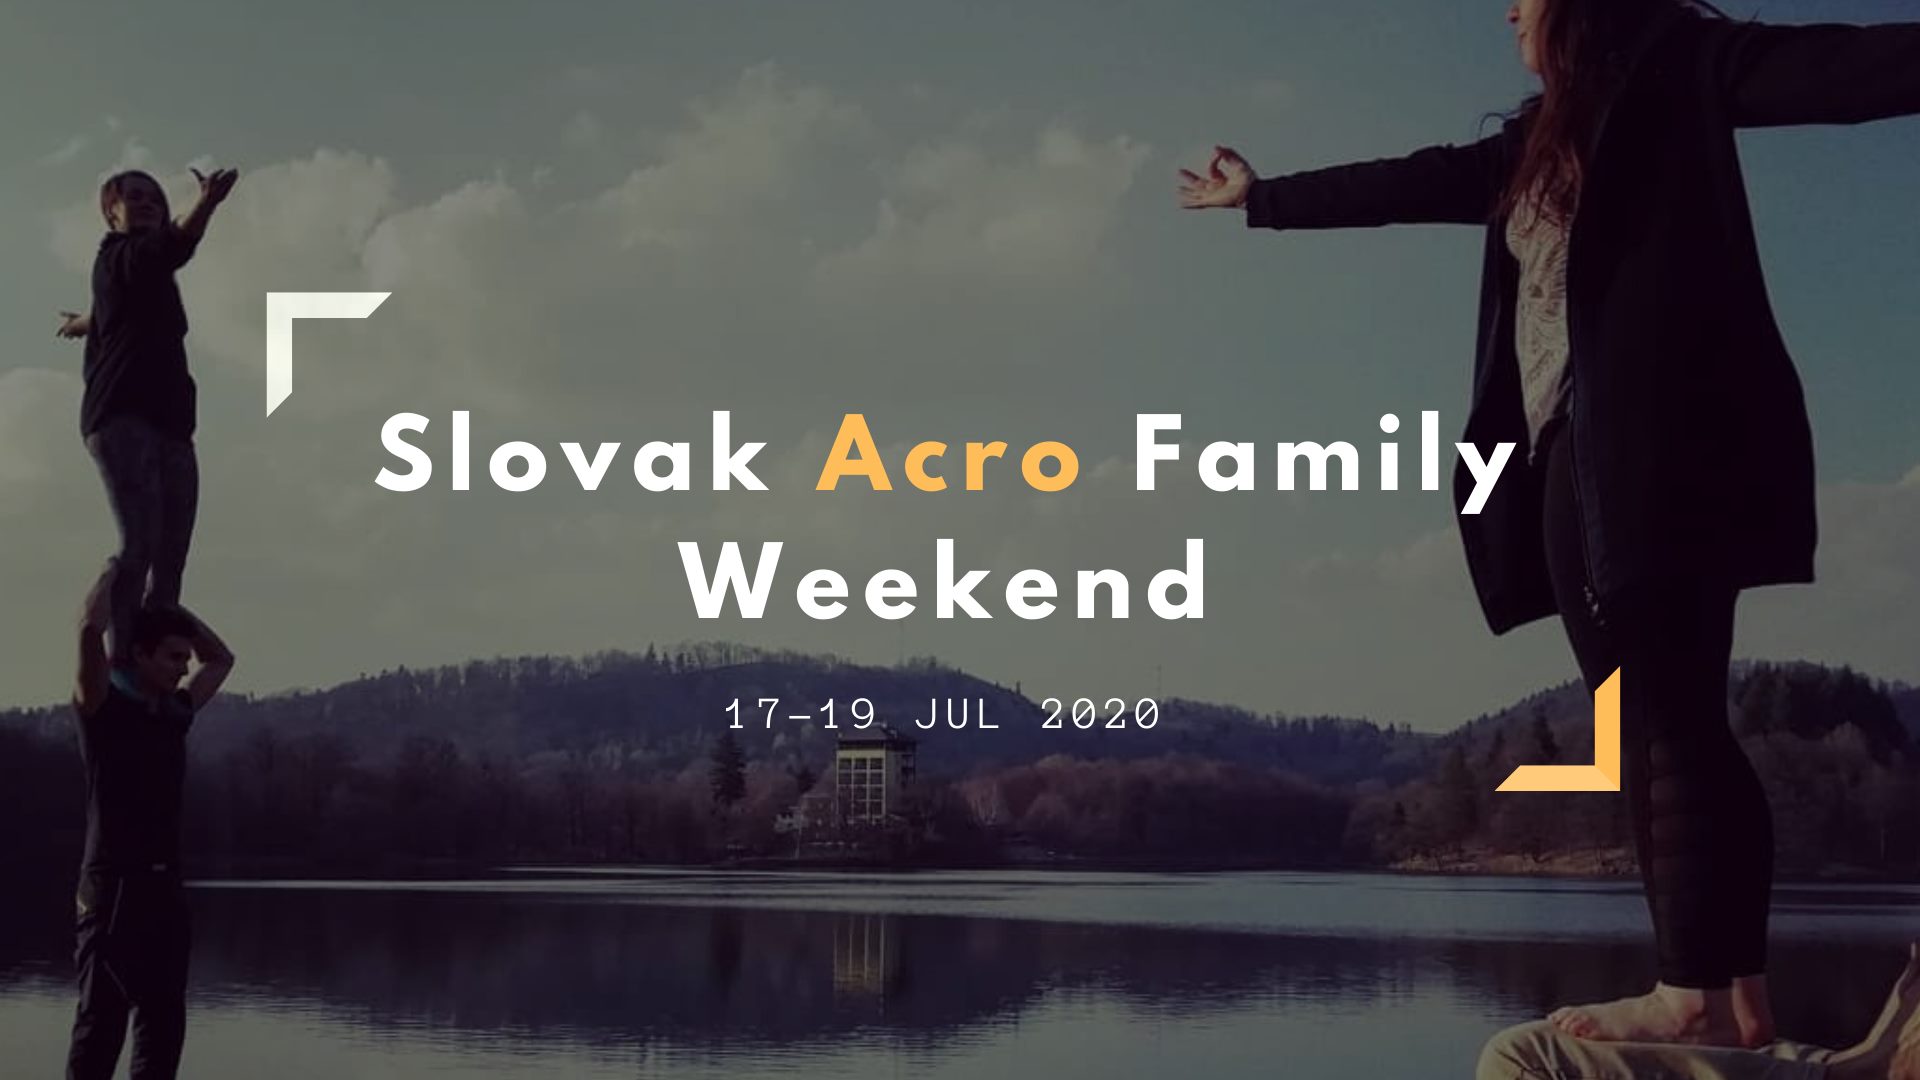 Slovak Acro Family Weekend